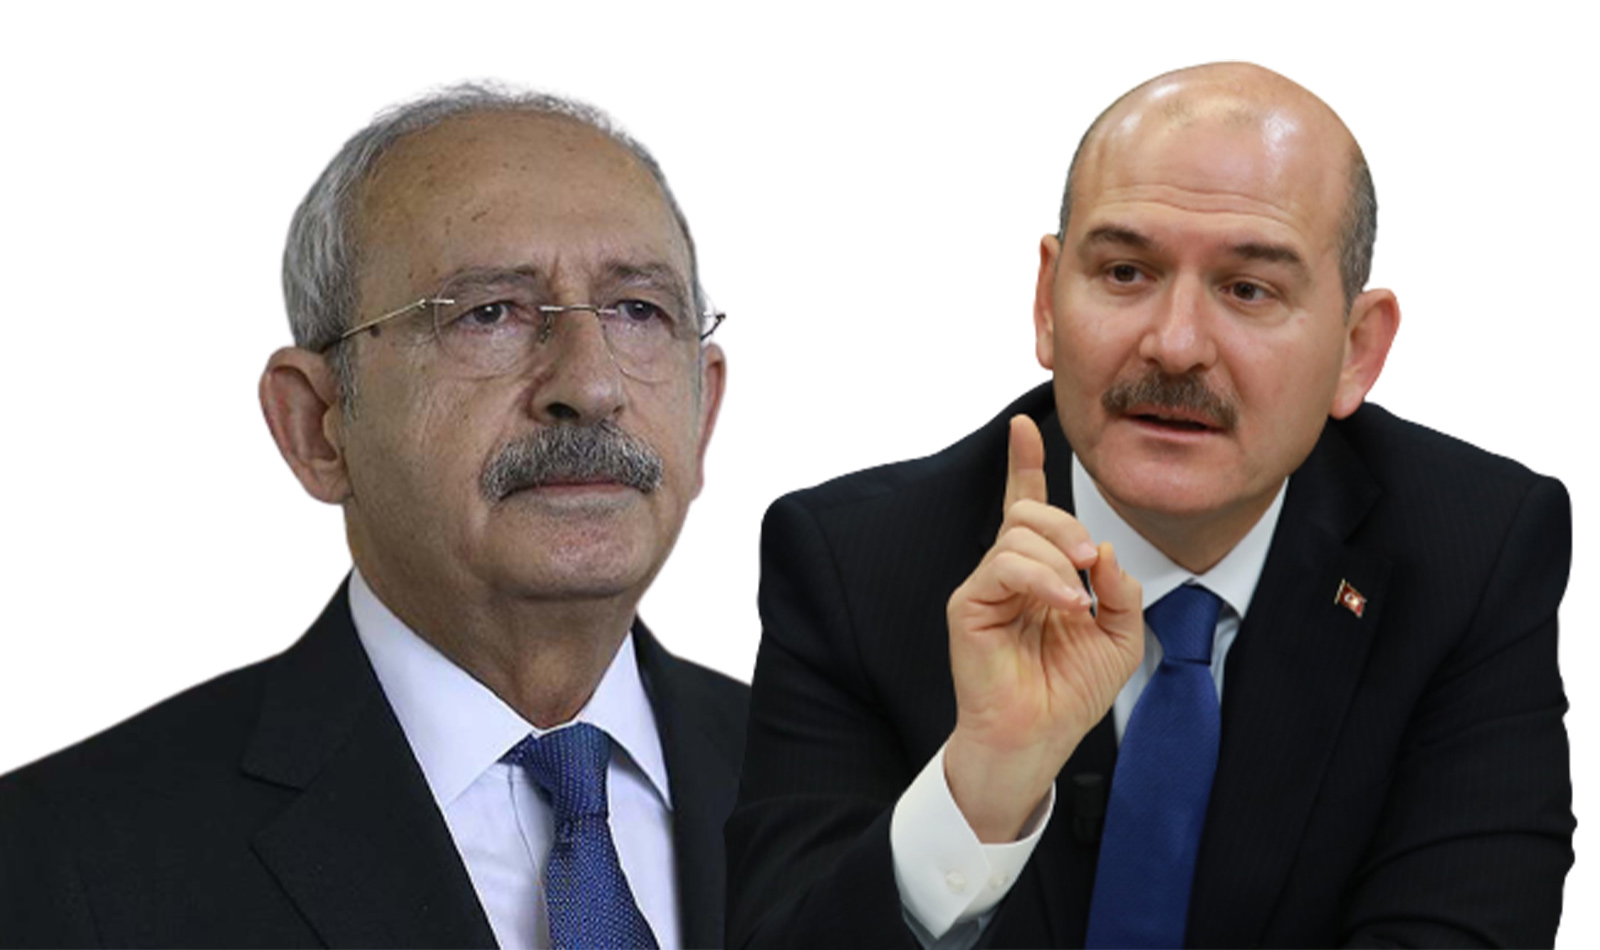 Parlamenter sistem metnini büyükelçiye yolladı mı? Bakan Soylu'dan Kemal Kılıçdaroğlu'na zor sorular: Grup Toplantısını bekledik, cevap gelmedi